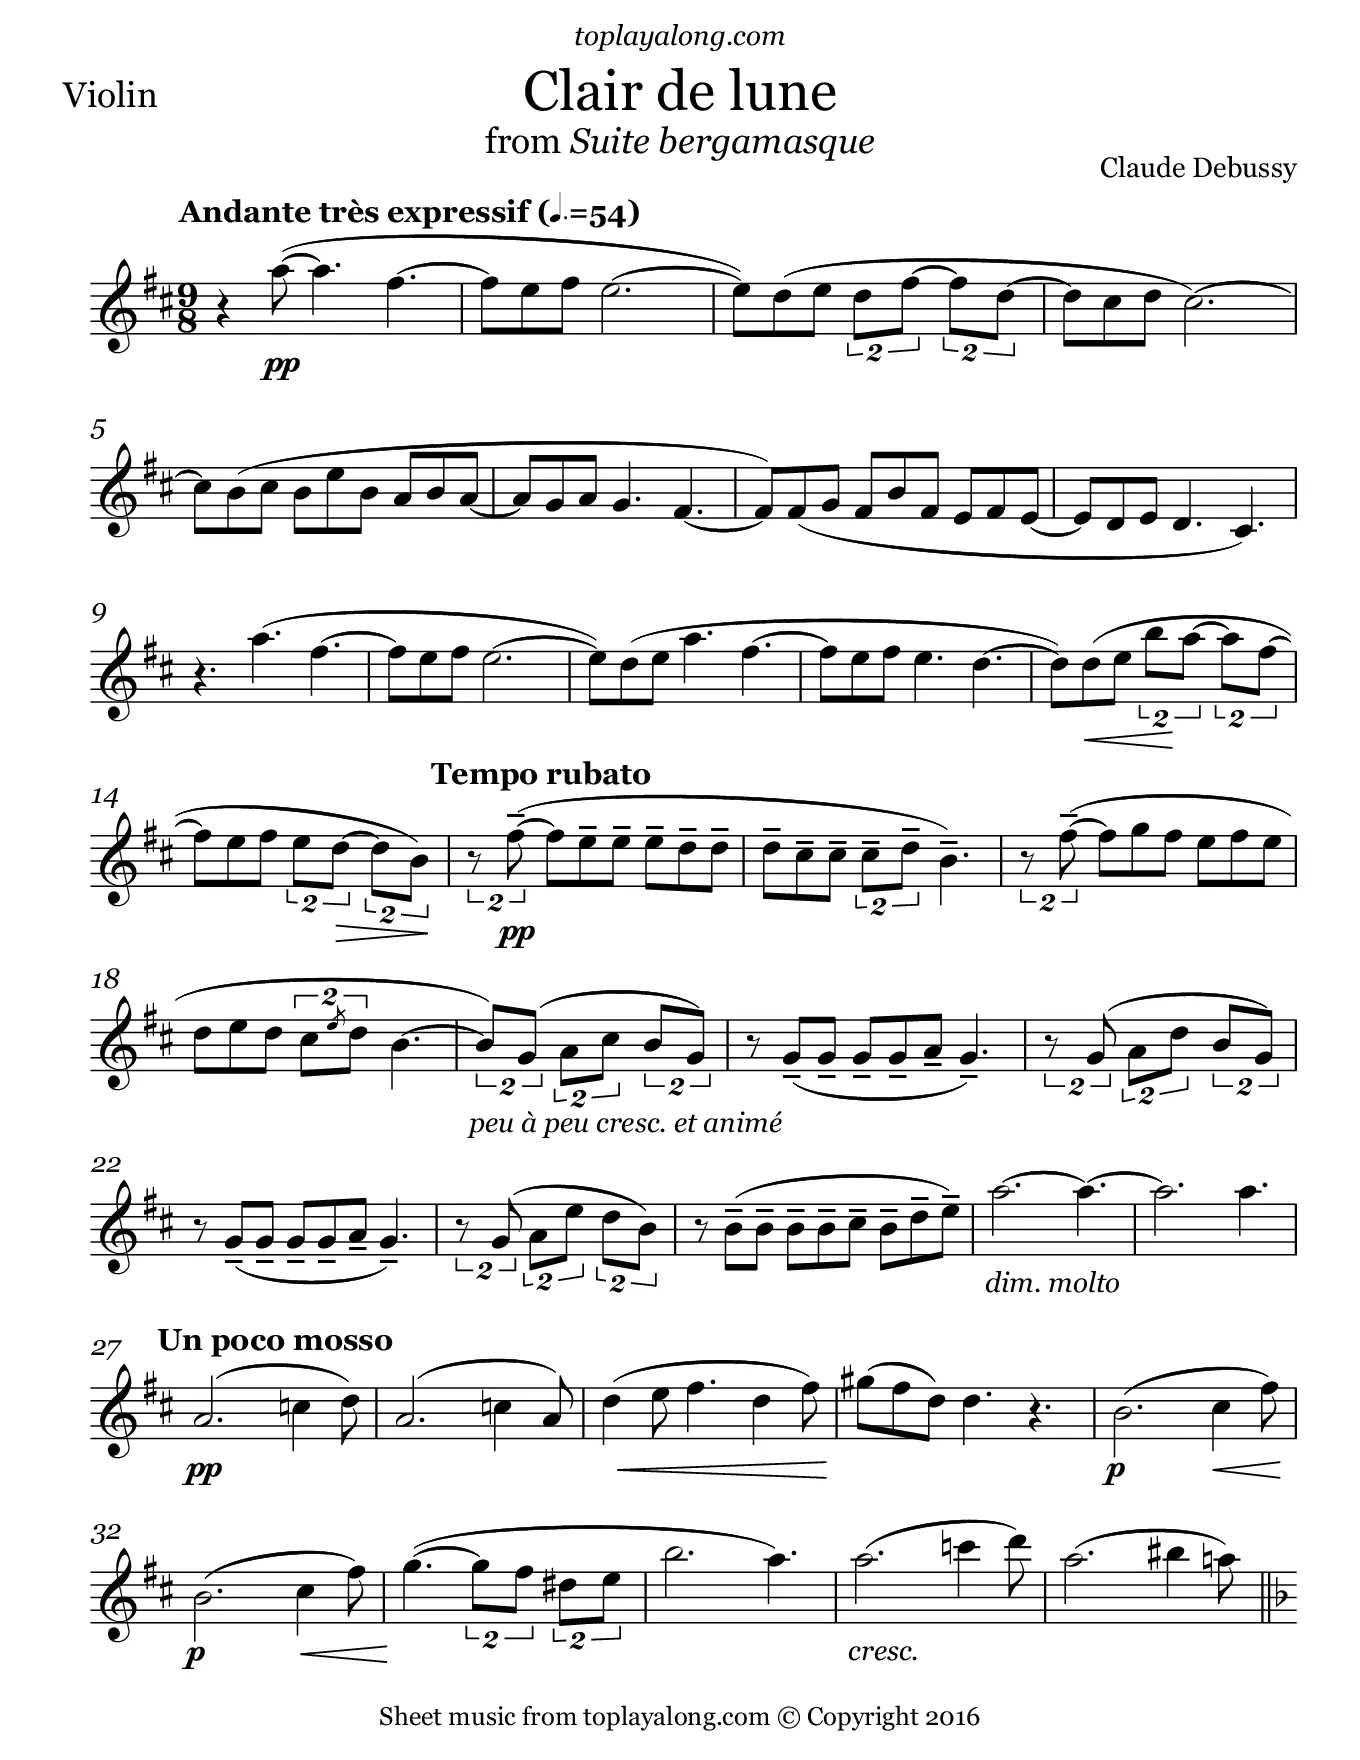 clair de lune violin score - What is Clair de lune scale